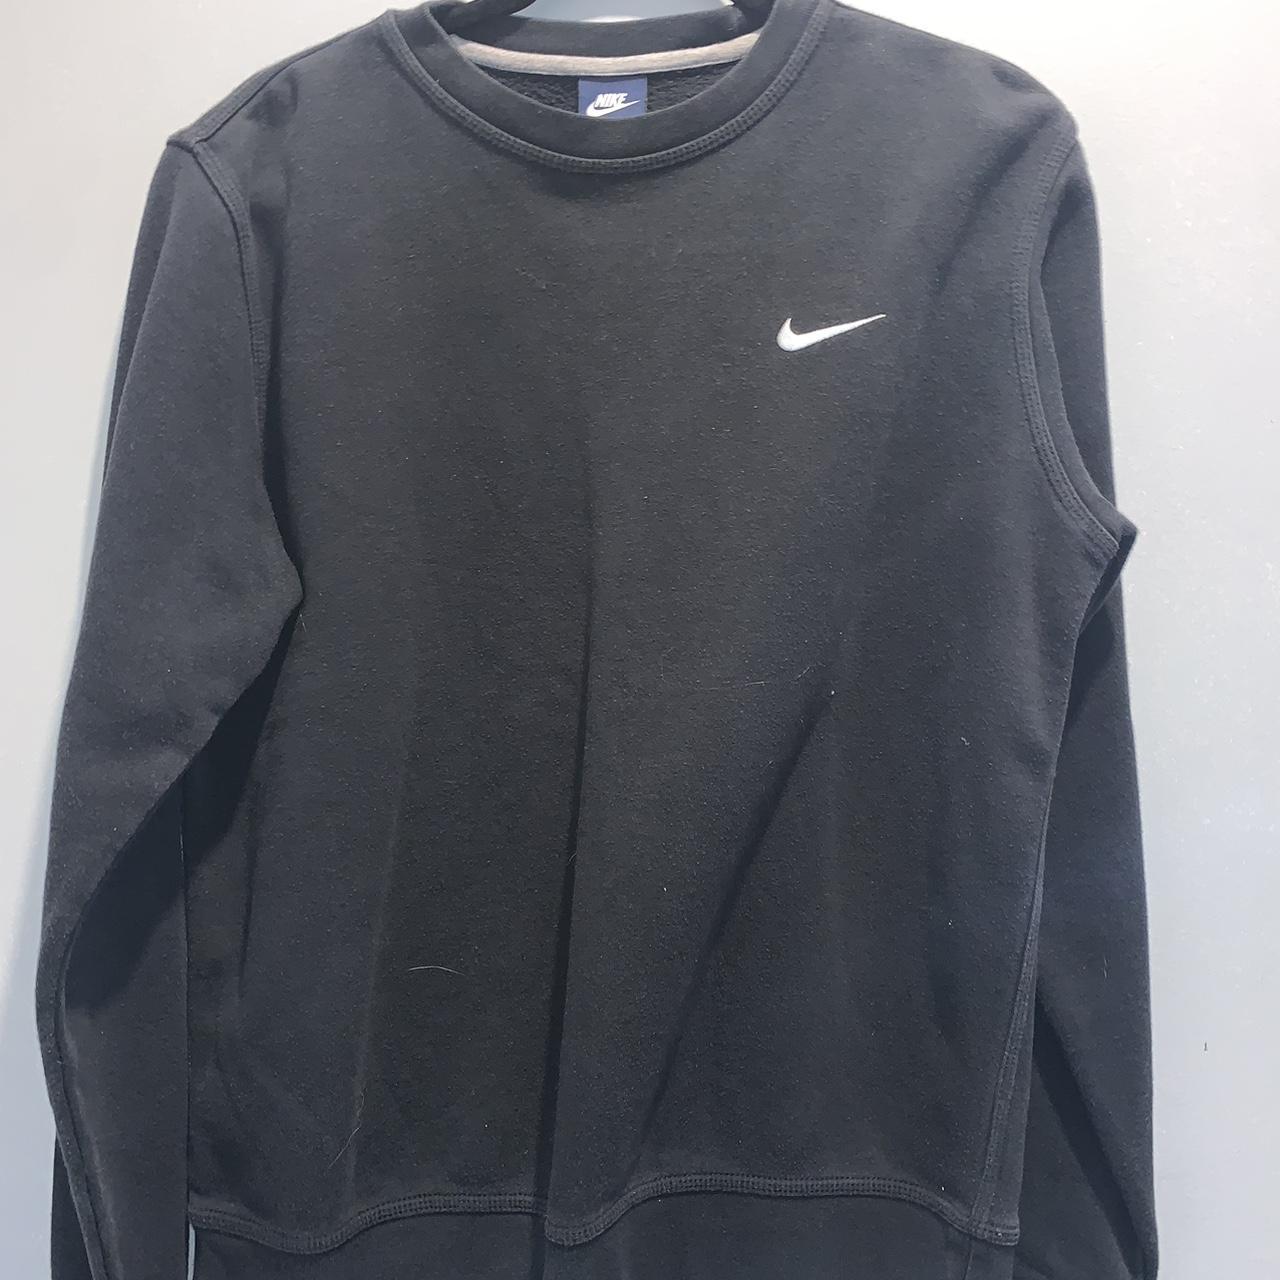 Nike sweater - Depop